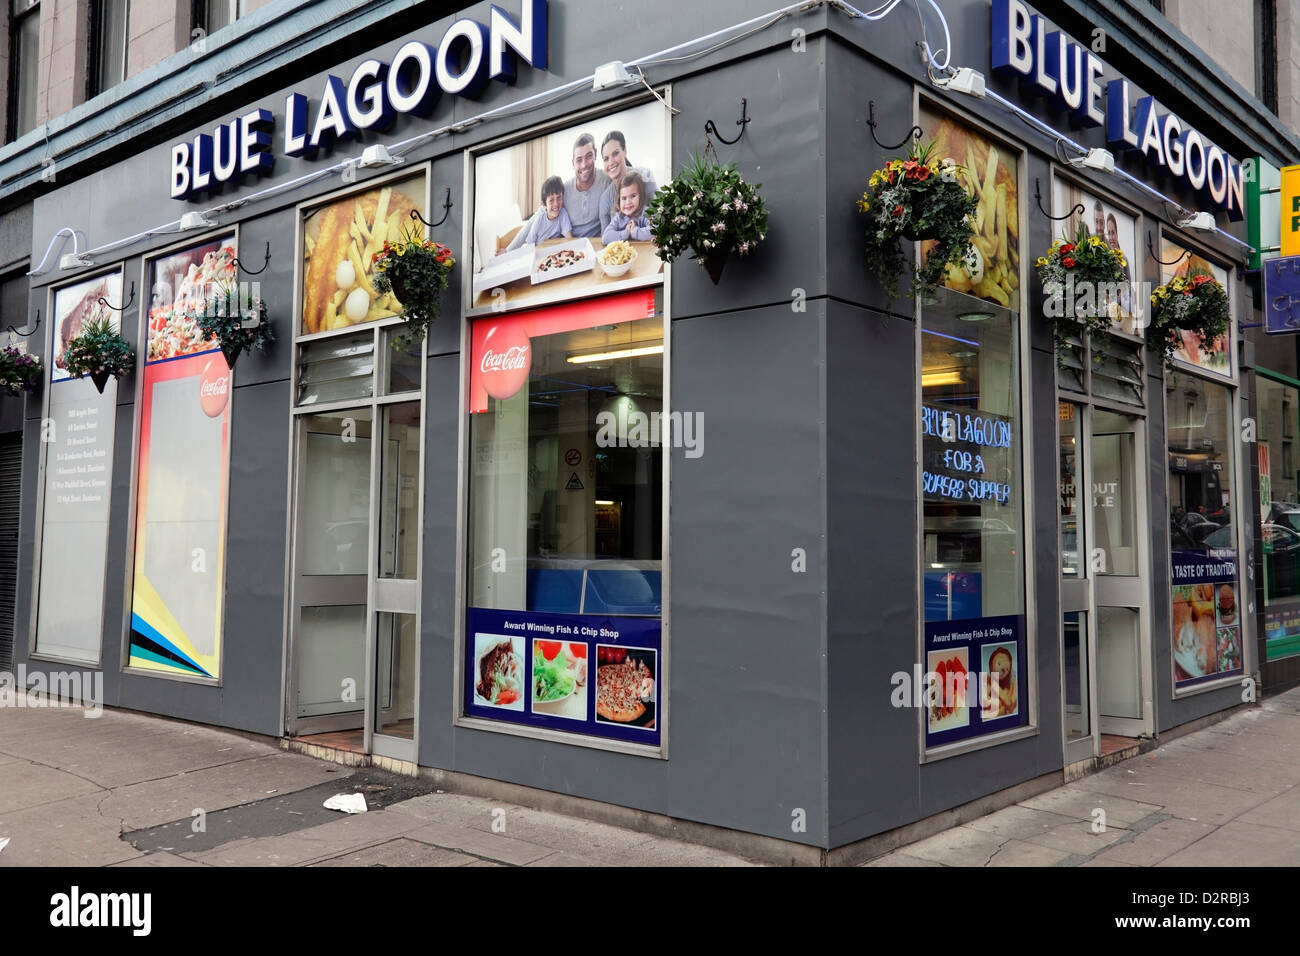 Fermé en permanence, Blue Lagoon Glasgow, Fish and Chip Shop dans le centre-ville, jonction de Bath Street et West Nile Street, Écosse, Royaume-Uni Banque D'Images